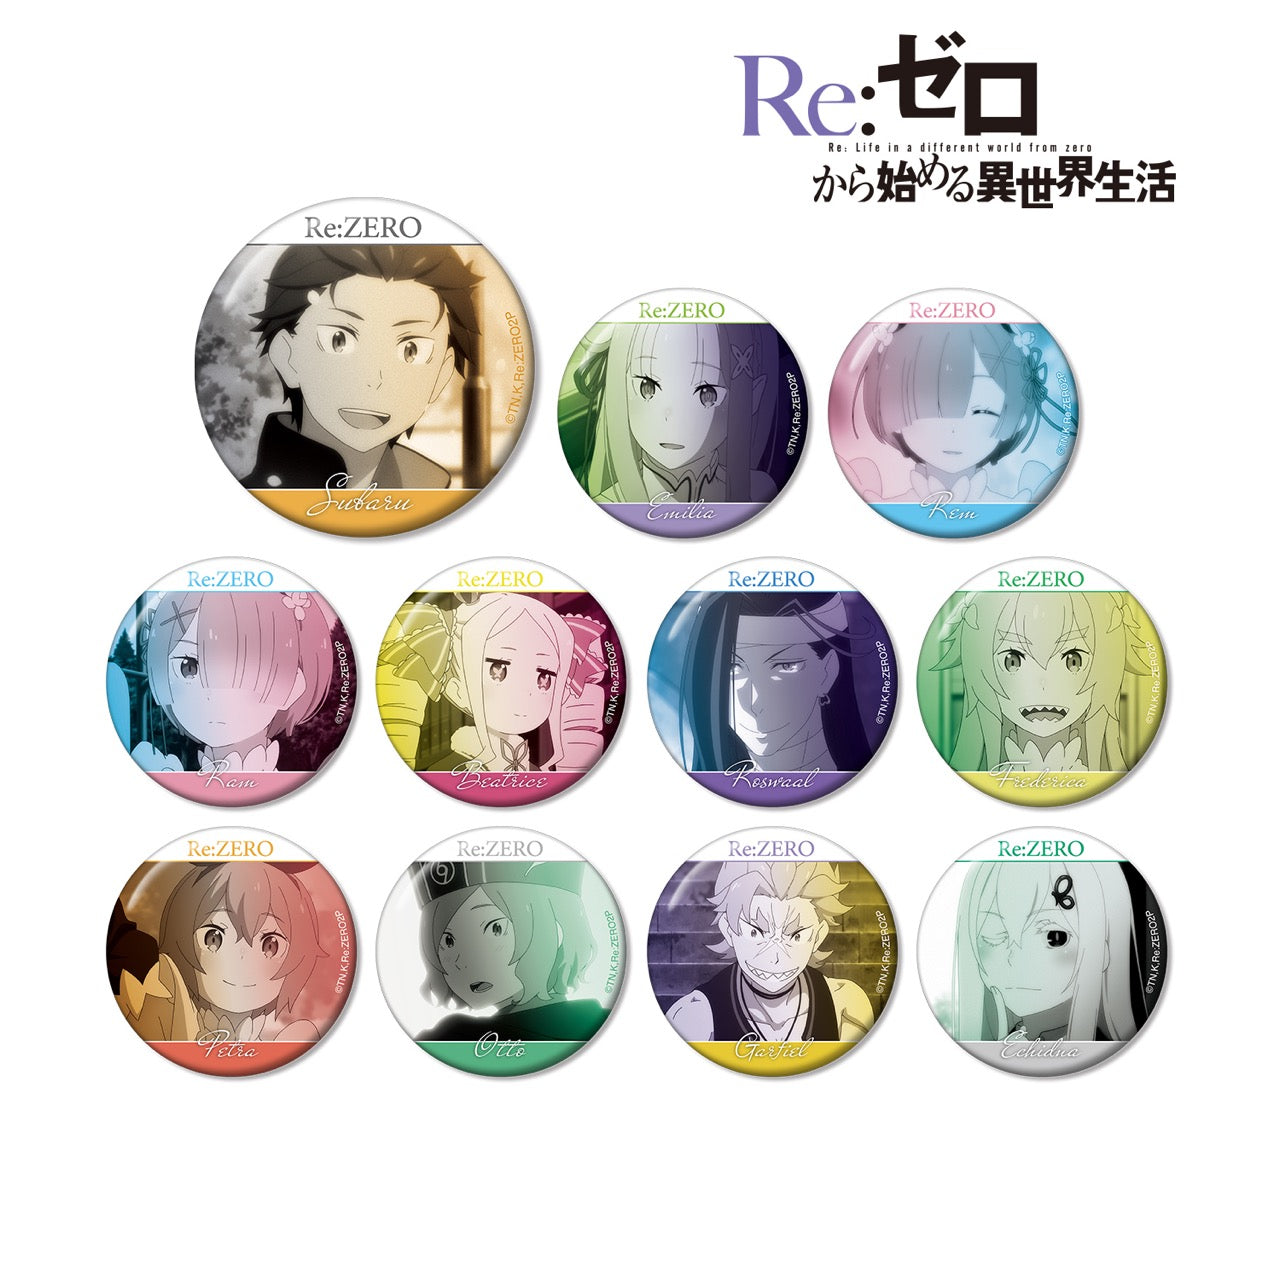 Re:ゼロから始める異世界生活』トレーディング缶バッジ BOX – Anime 